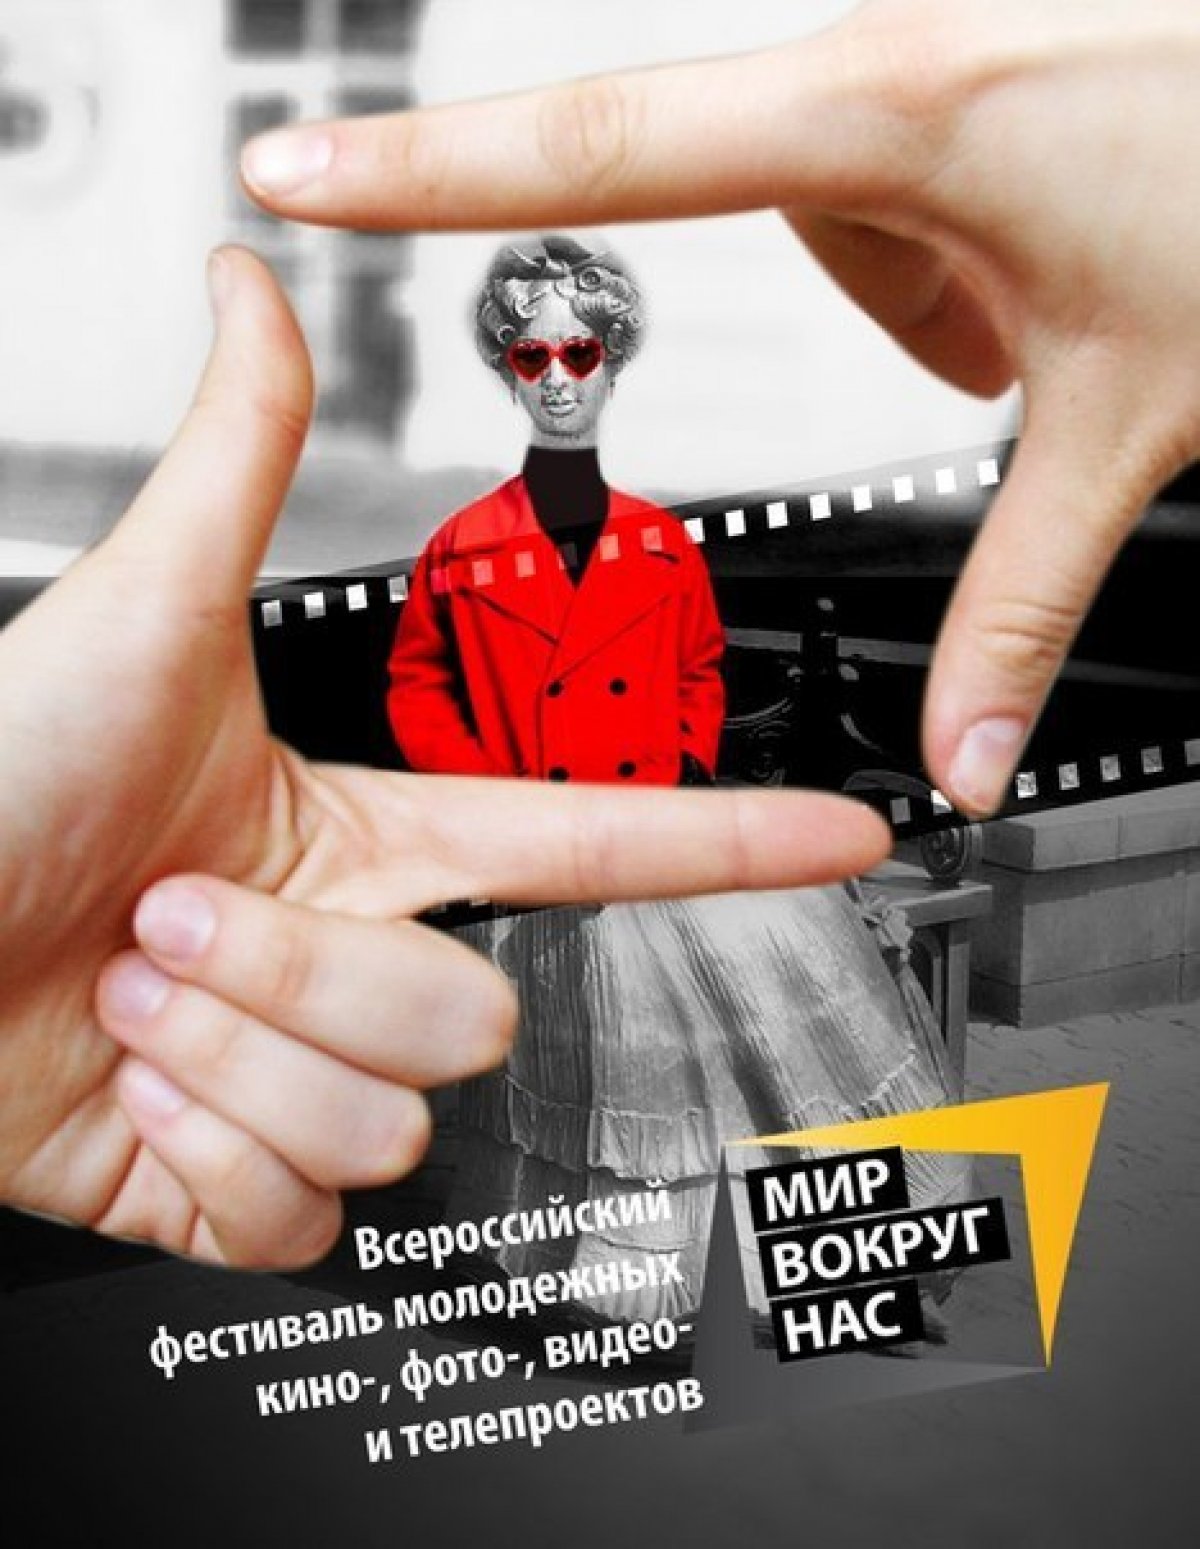 Срок подачи заявок на участие в V Всероссийском фестивале молодежных кино-, фото-, видео-, интернет-, радио- и телепроектов "МИР ВОКРУГ НАС" продлен до 16 мая